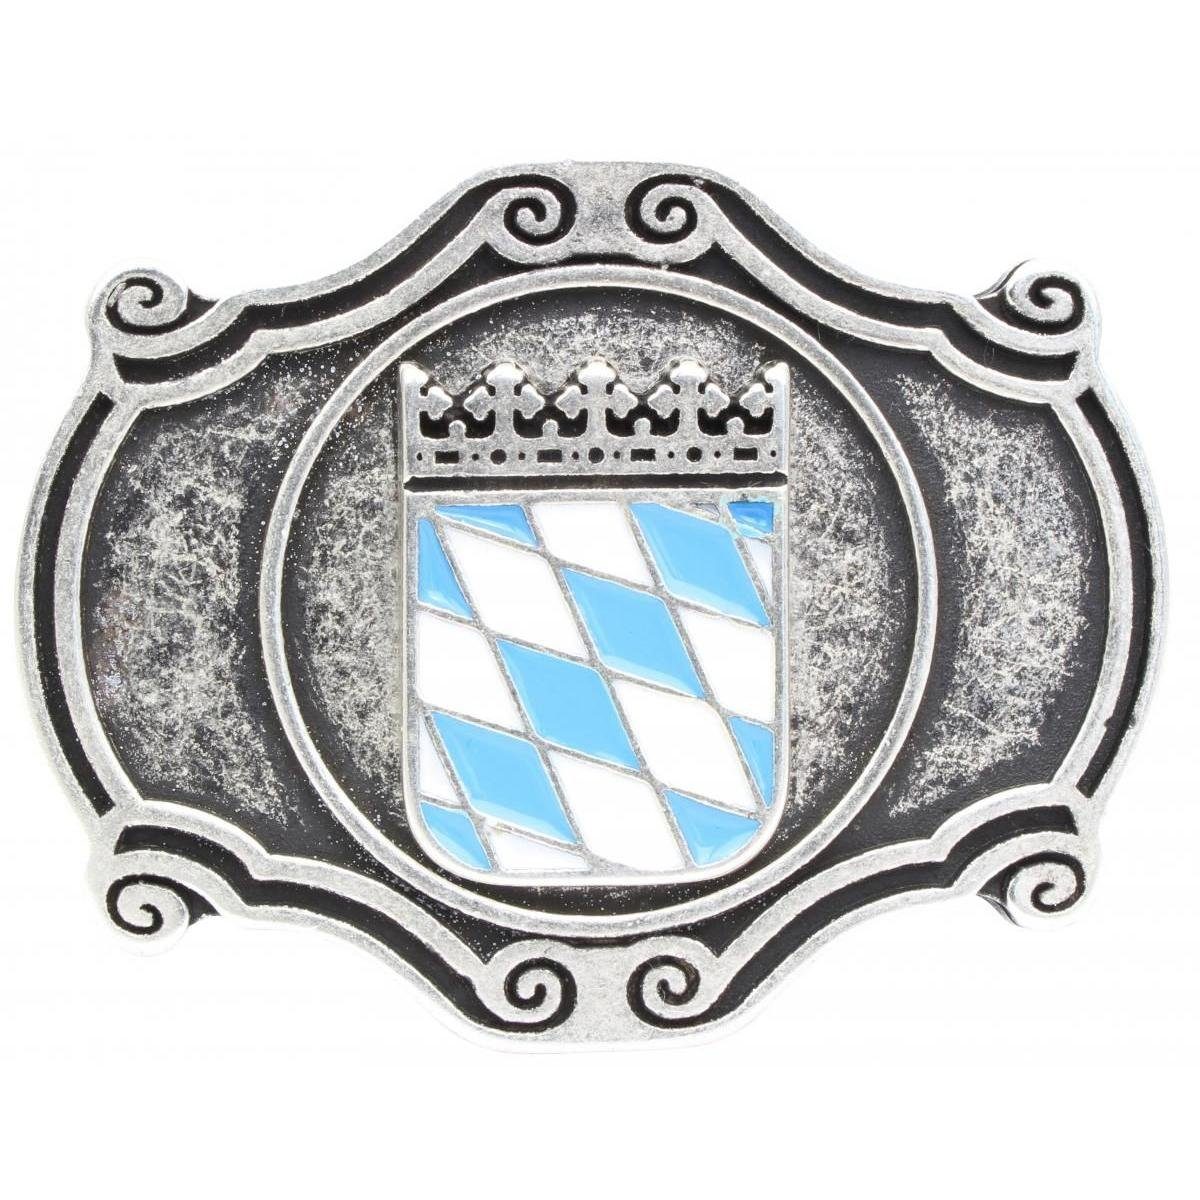 BELTINGER Gürtelschnalle Wappen cm Buckle Wechselschließe Gürtelschließe 40mm - Fü Bayern - 4,0